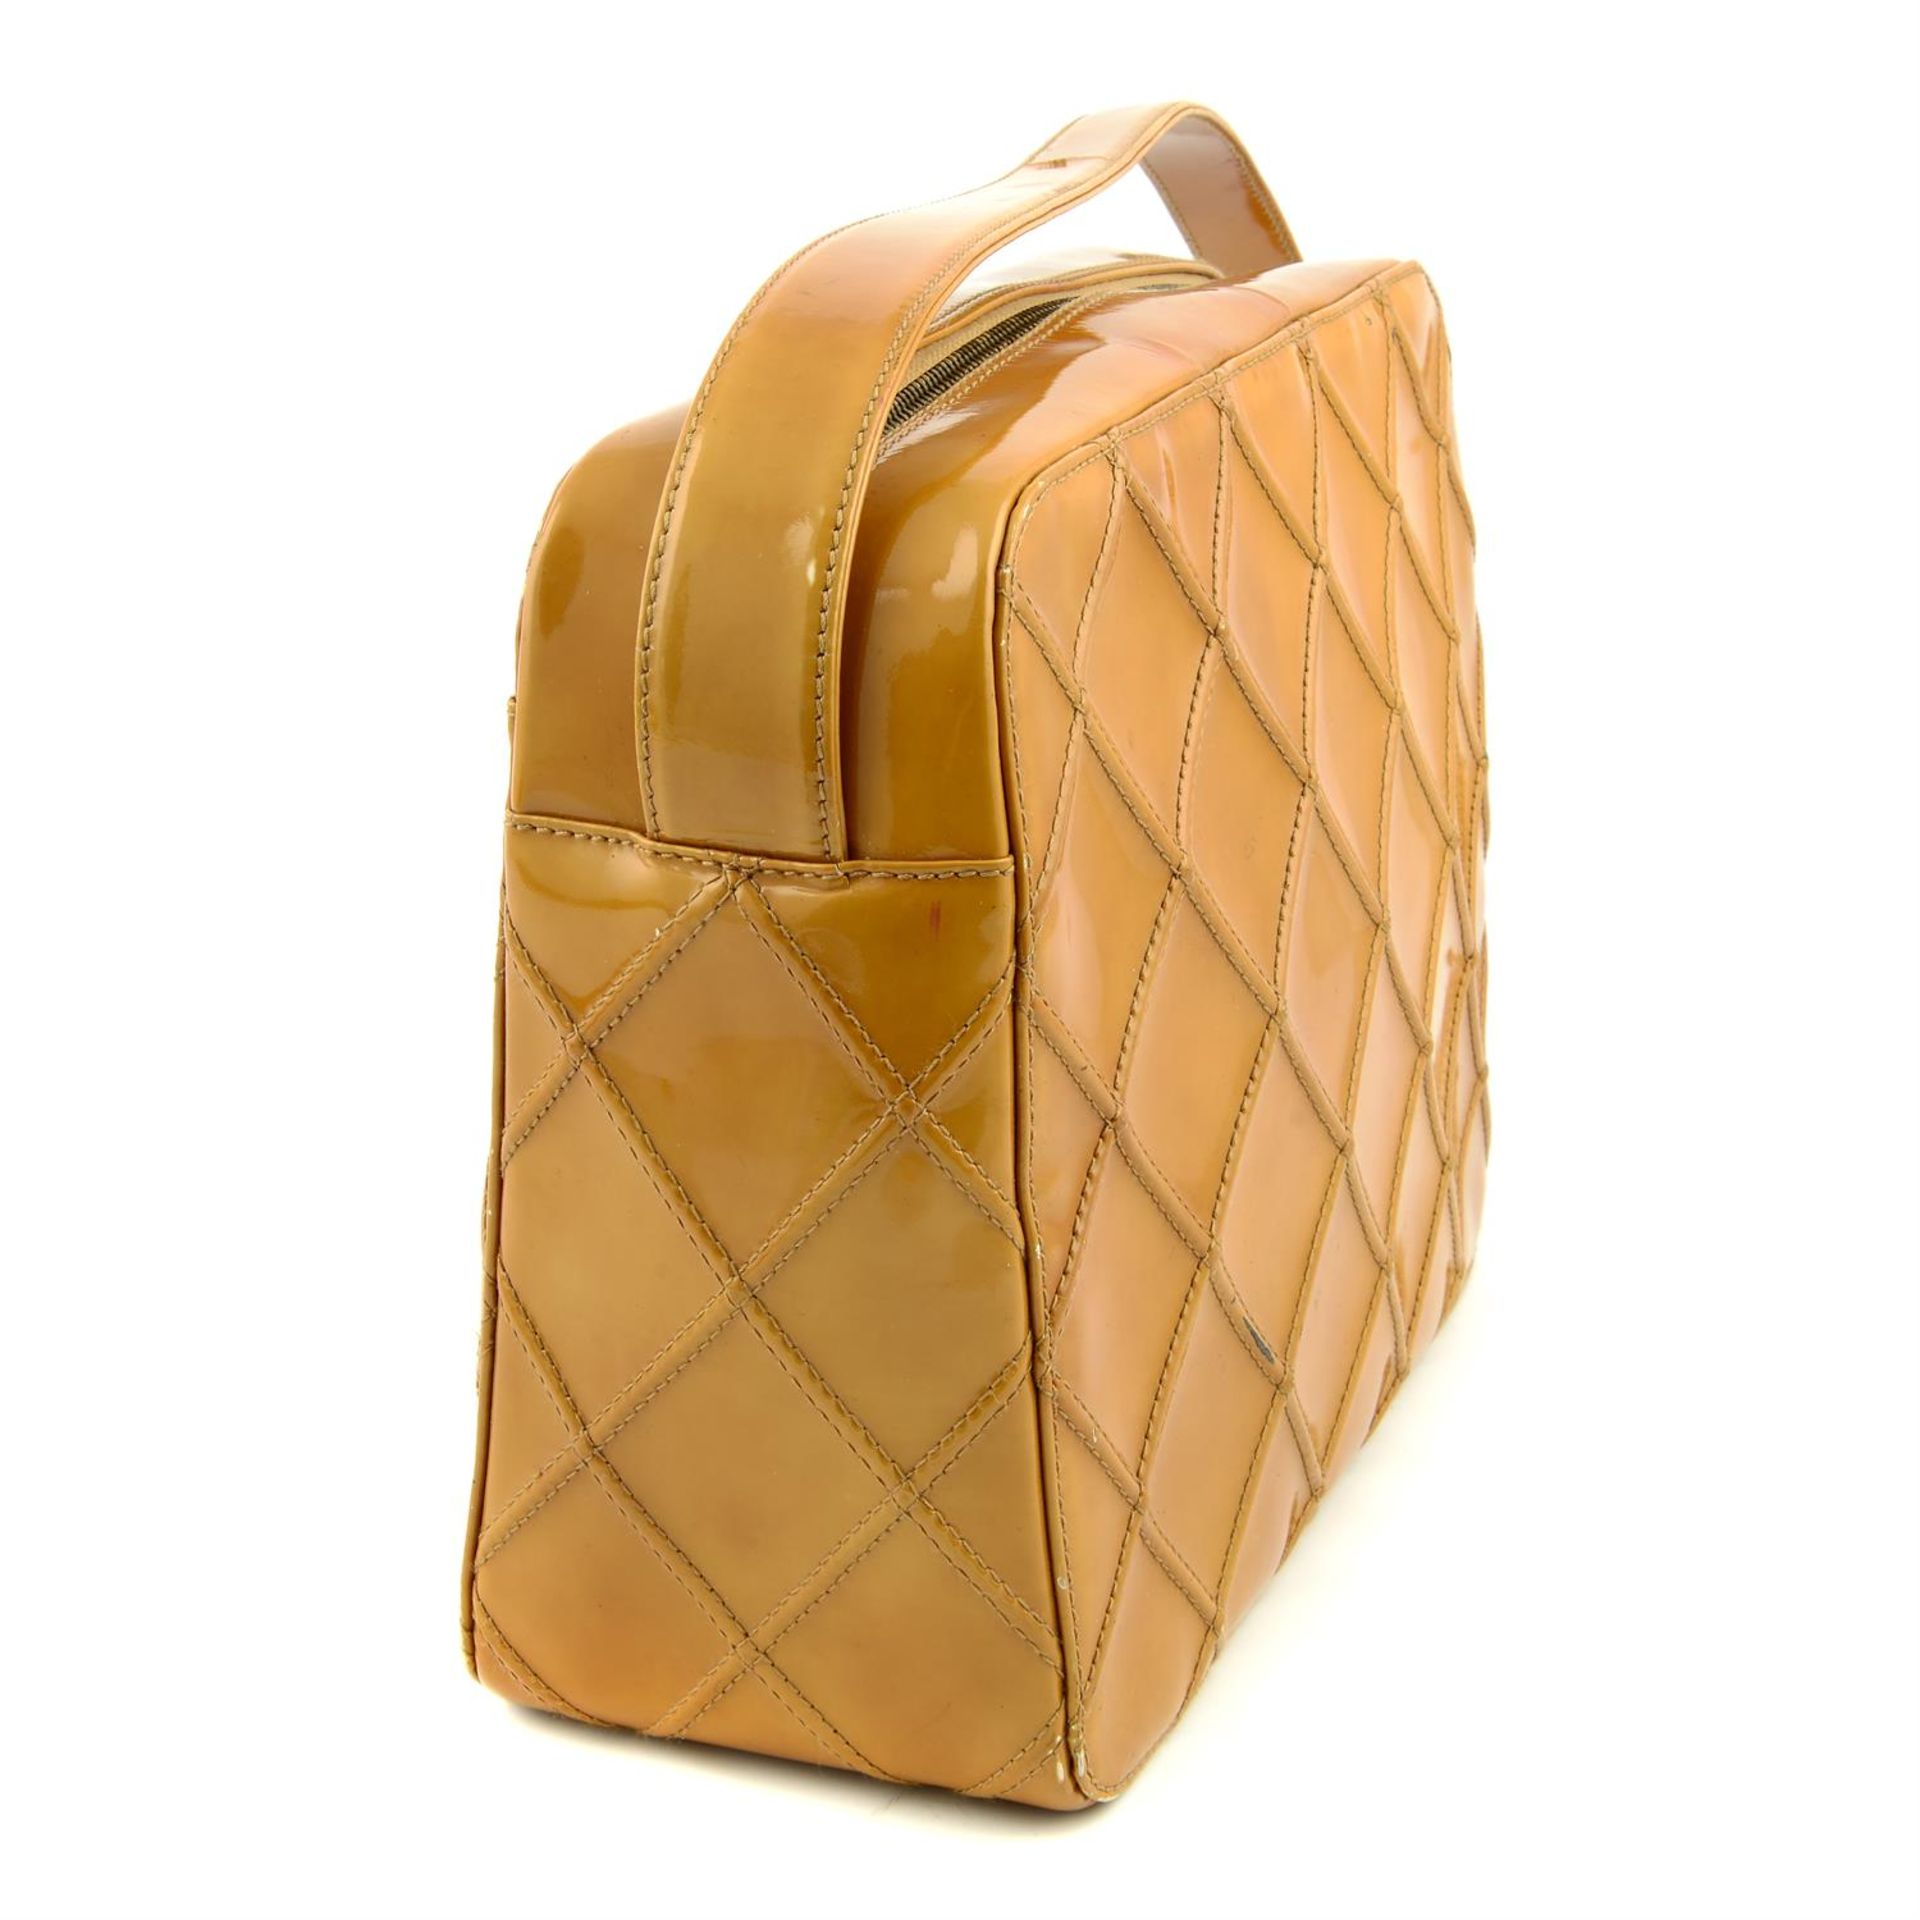 CHANEL - a 2000 orange patent leather shoulder bag. - Image 4 of 7